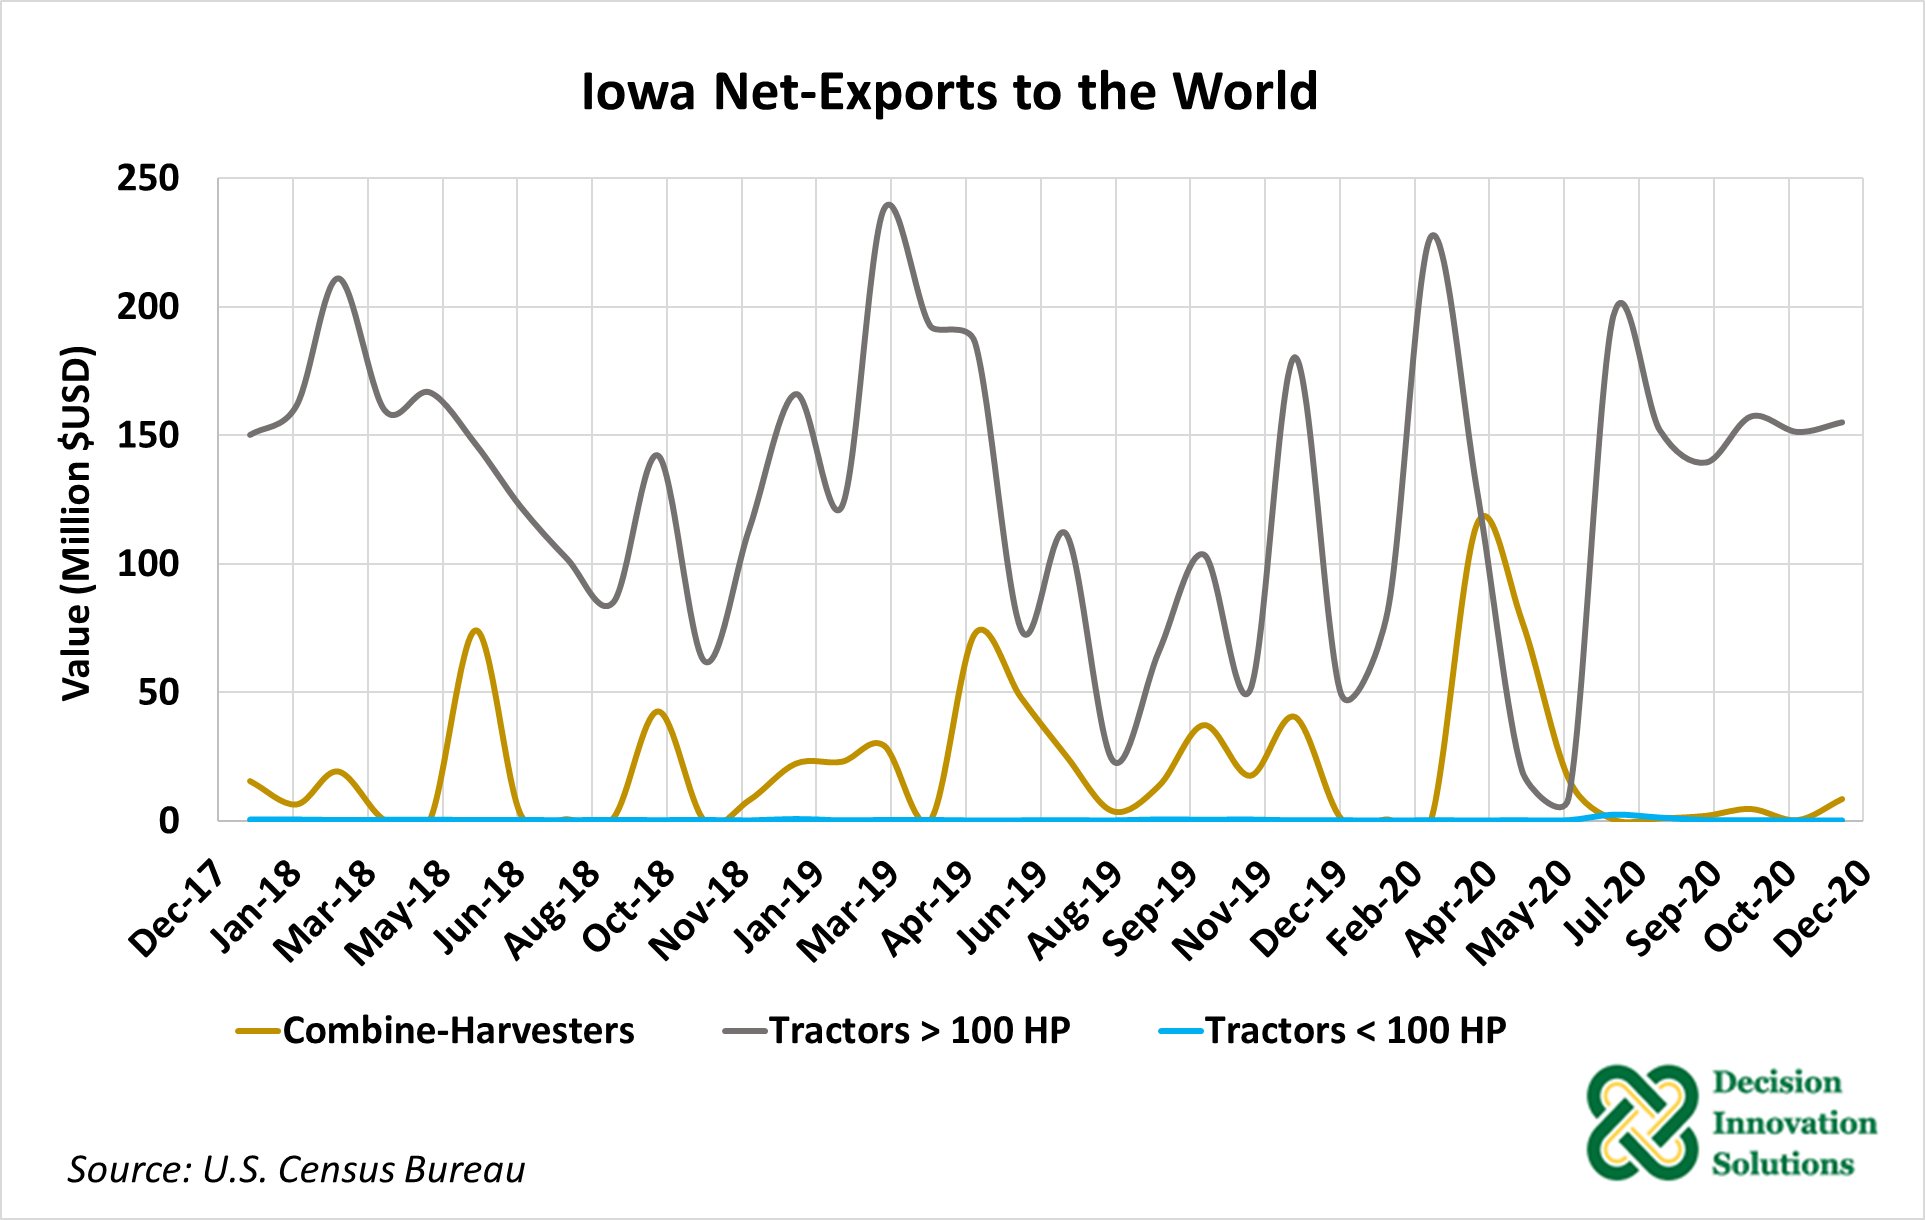 Figure 2. Iowa Net Exports of Tractors 